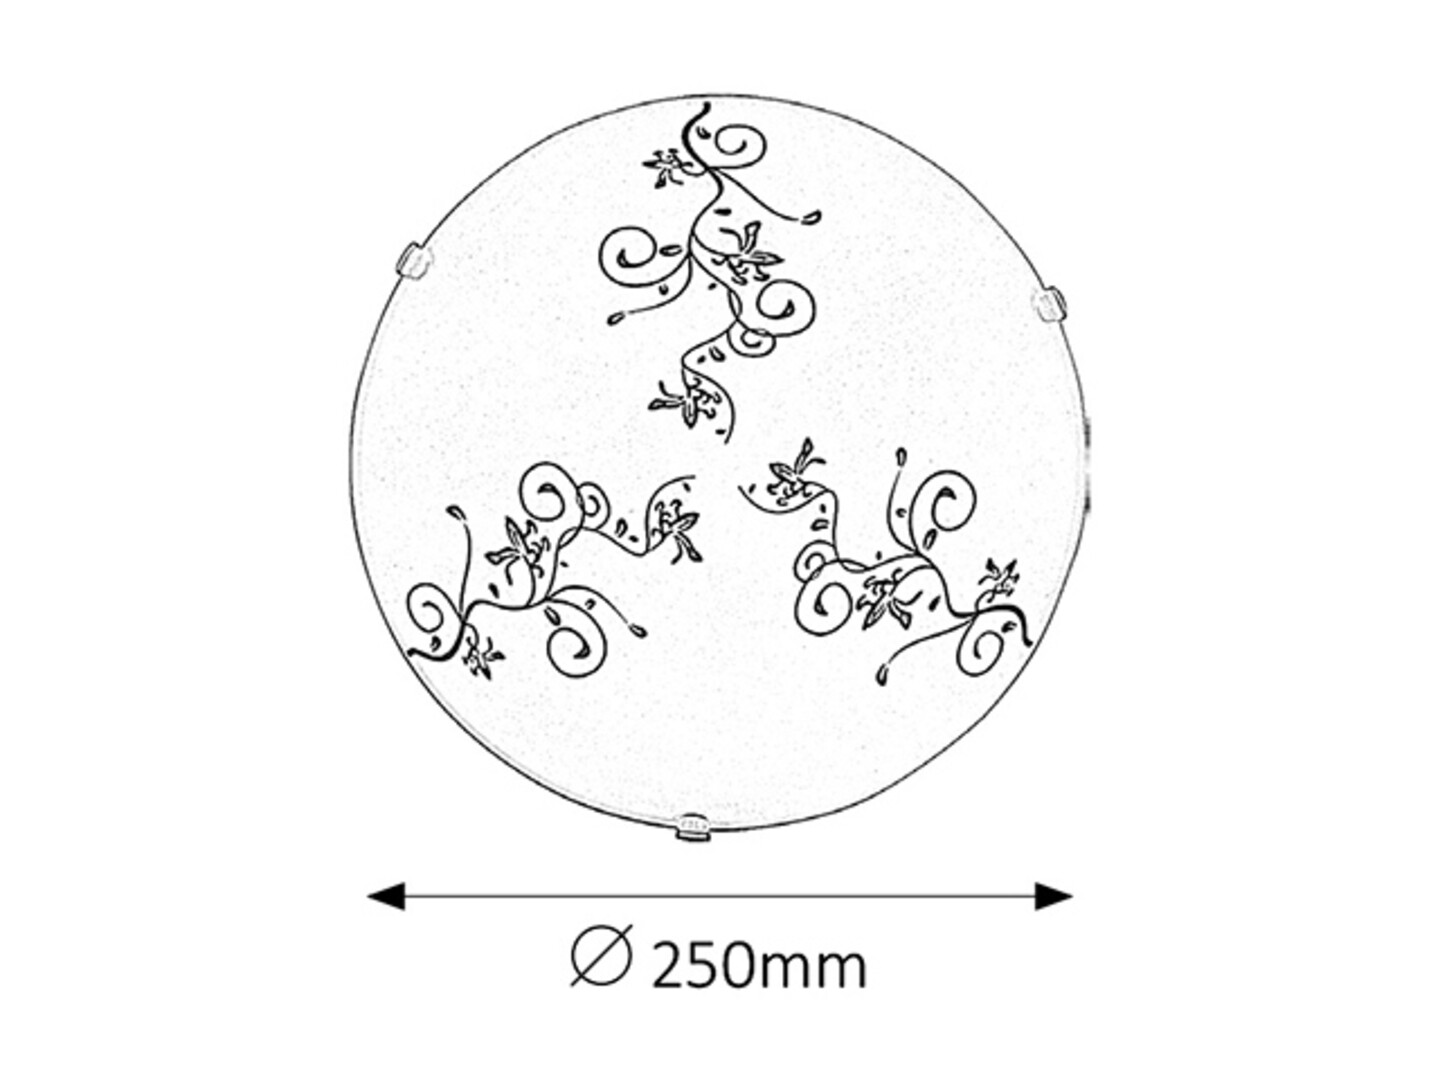 Deckenleuchte 1 Spot Bloomy 1847, E27, Metall-Kunststoff, weiß, rund, Standard, ø250mm